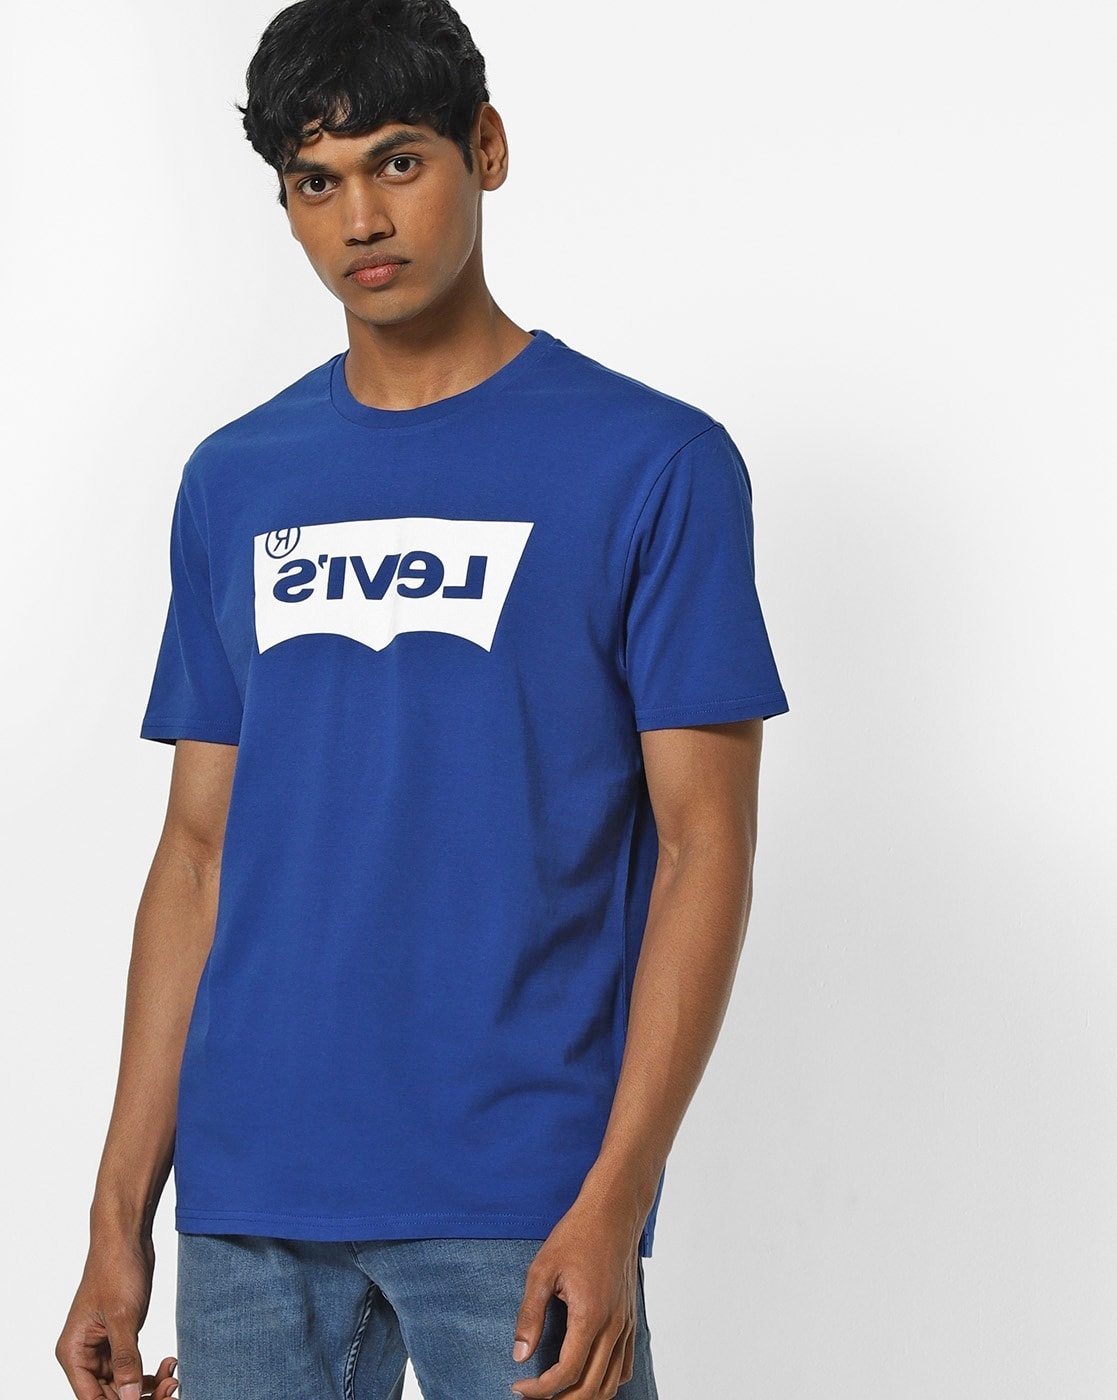 navy blue levis t shirt